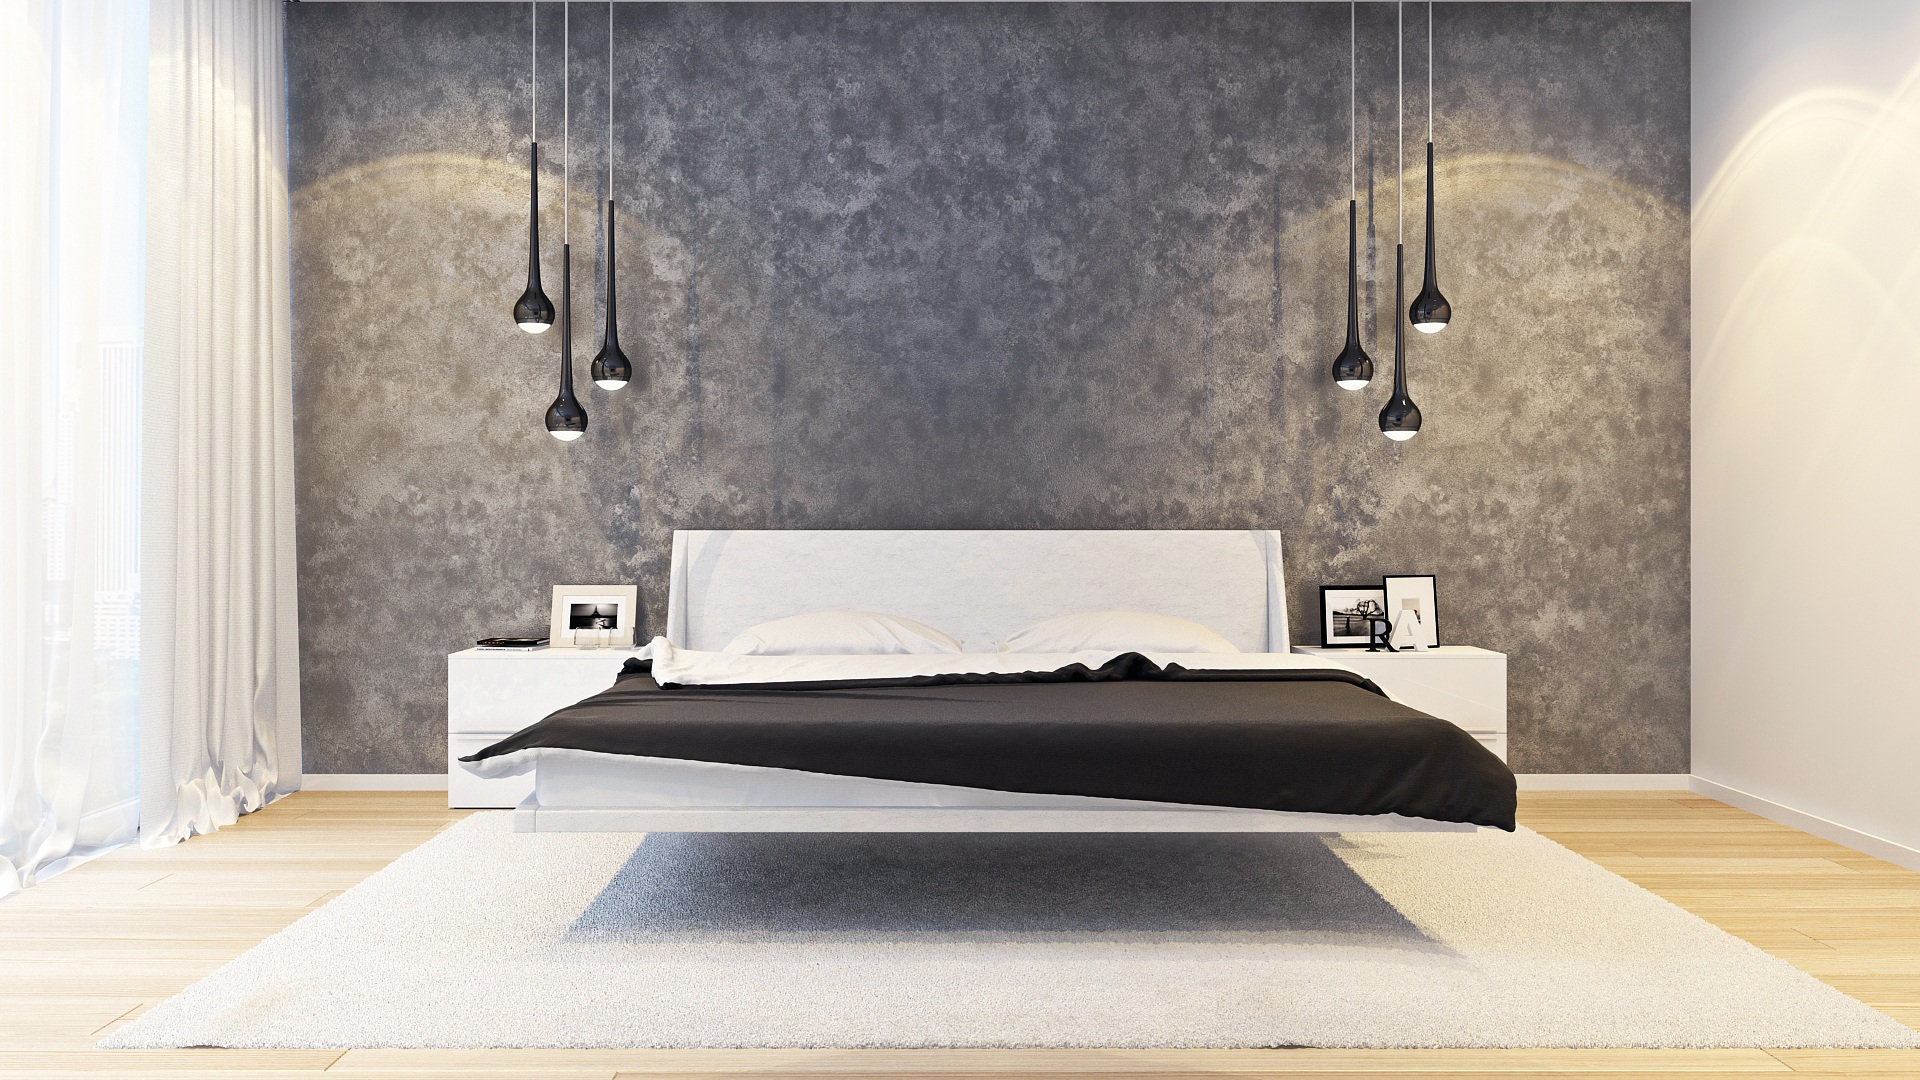 Salon spacieux avec des murs sombres dans un style minimaliste.